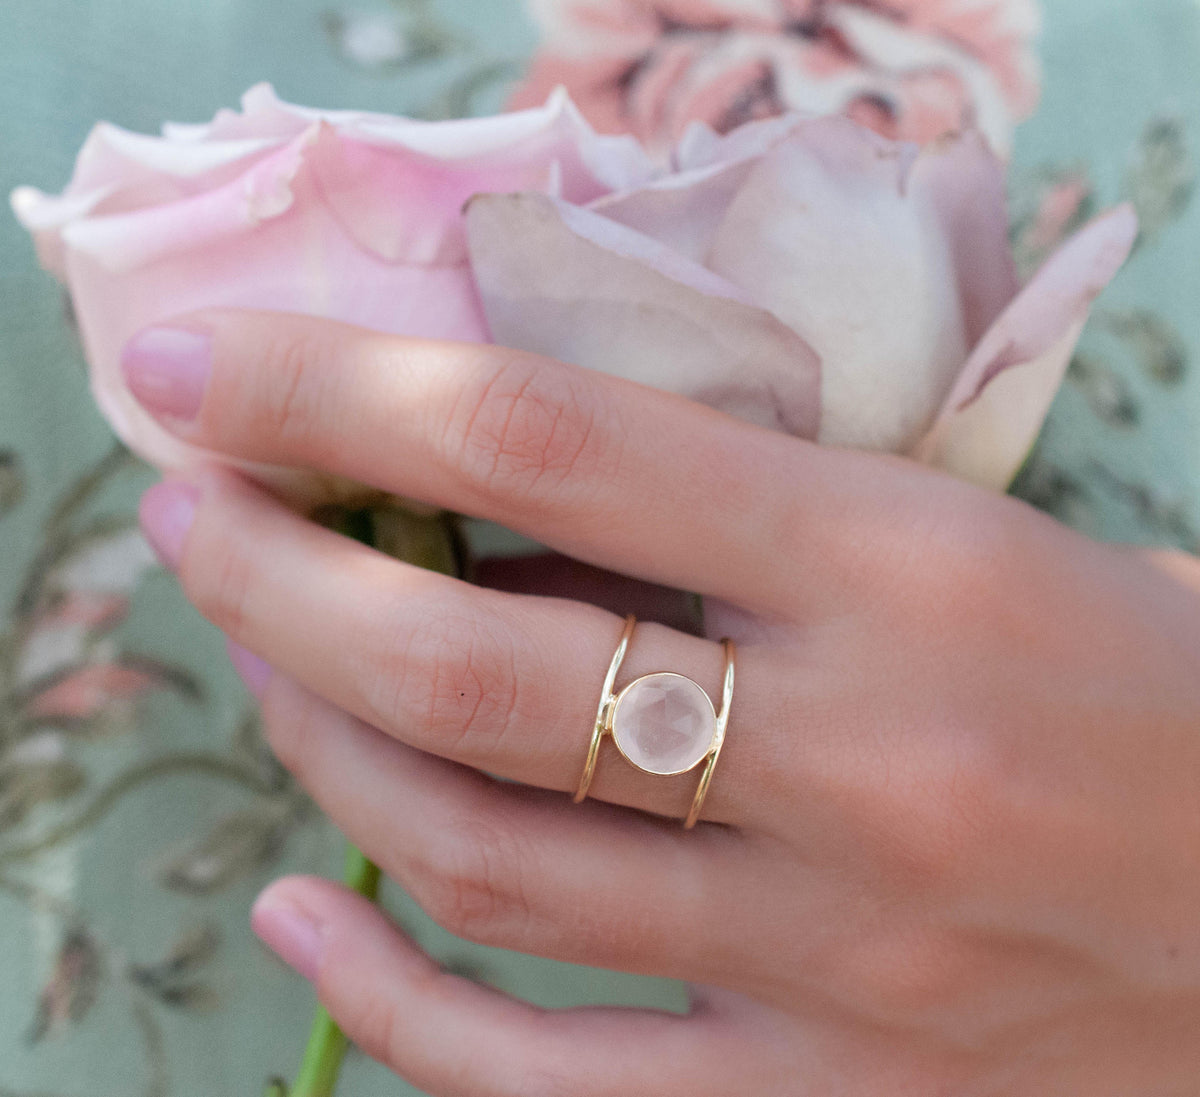 Rose Quartz Ring * Gold Ring * Statement Ring * Gemstone Ring * Pink * Bridal Ring * Wedding Ring * Organic Ring * Natural* BJR013